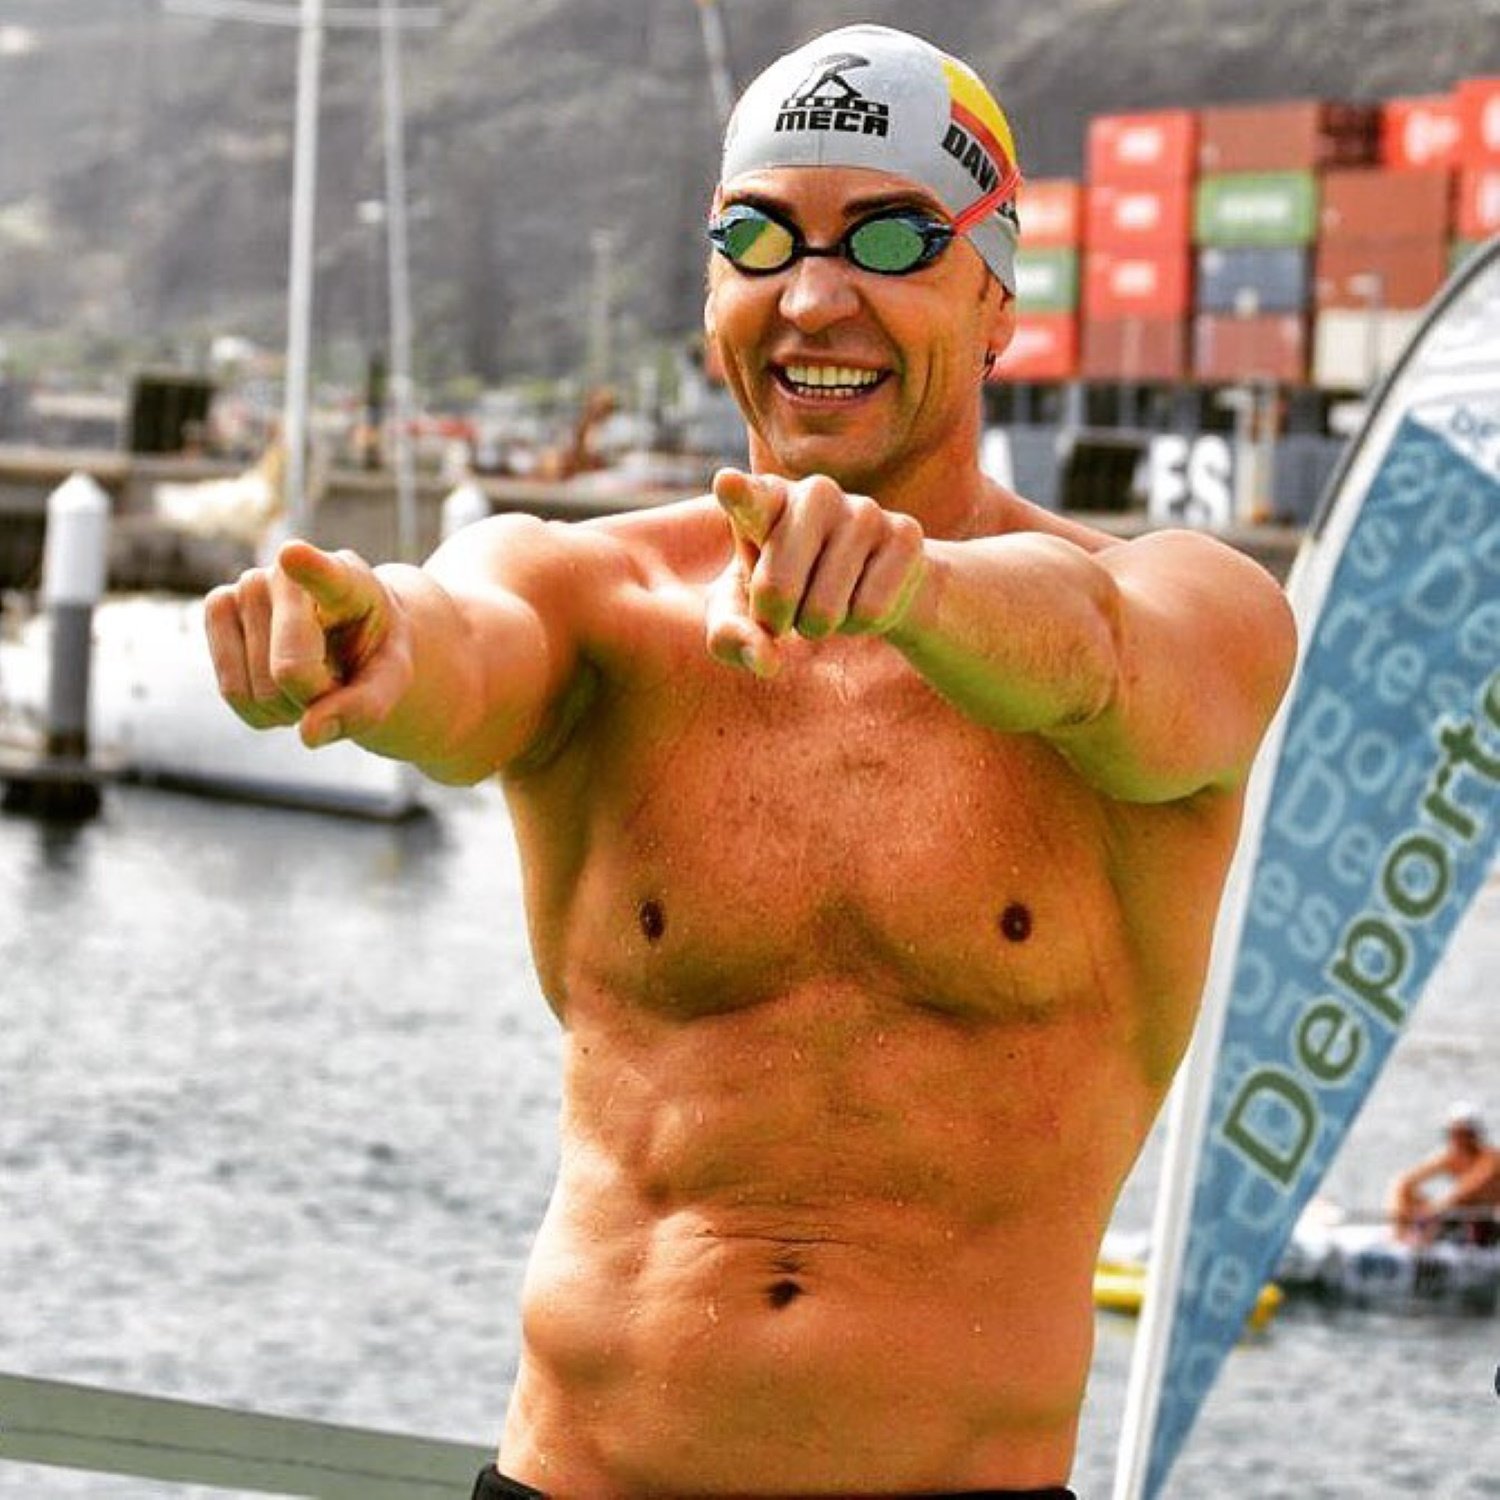 La nova i sorprenent vida del nedador David Meca: què fa ara